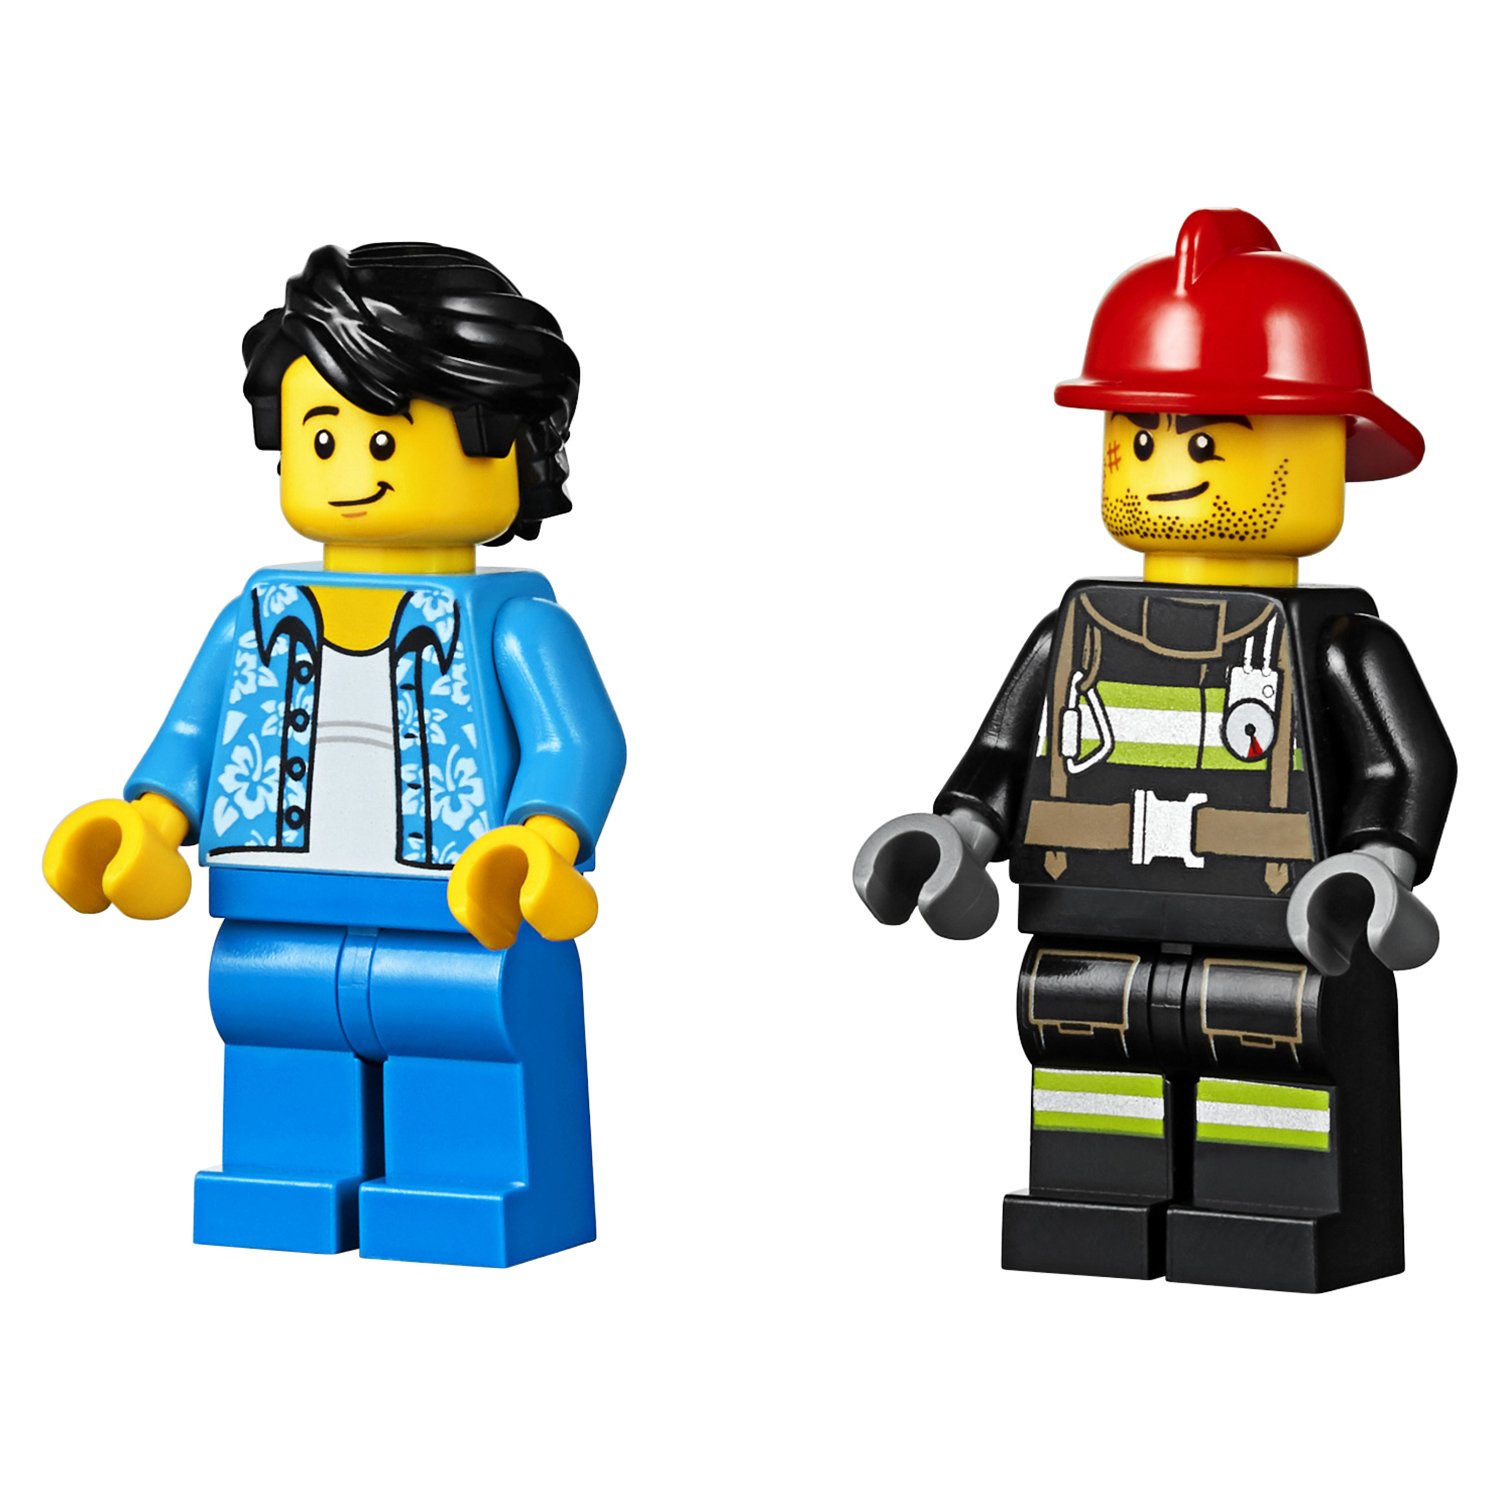 Конструктор Lego® City Fire - Пожар на пикнике  